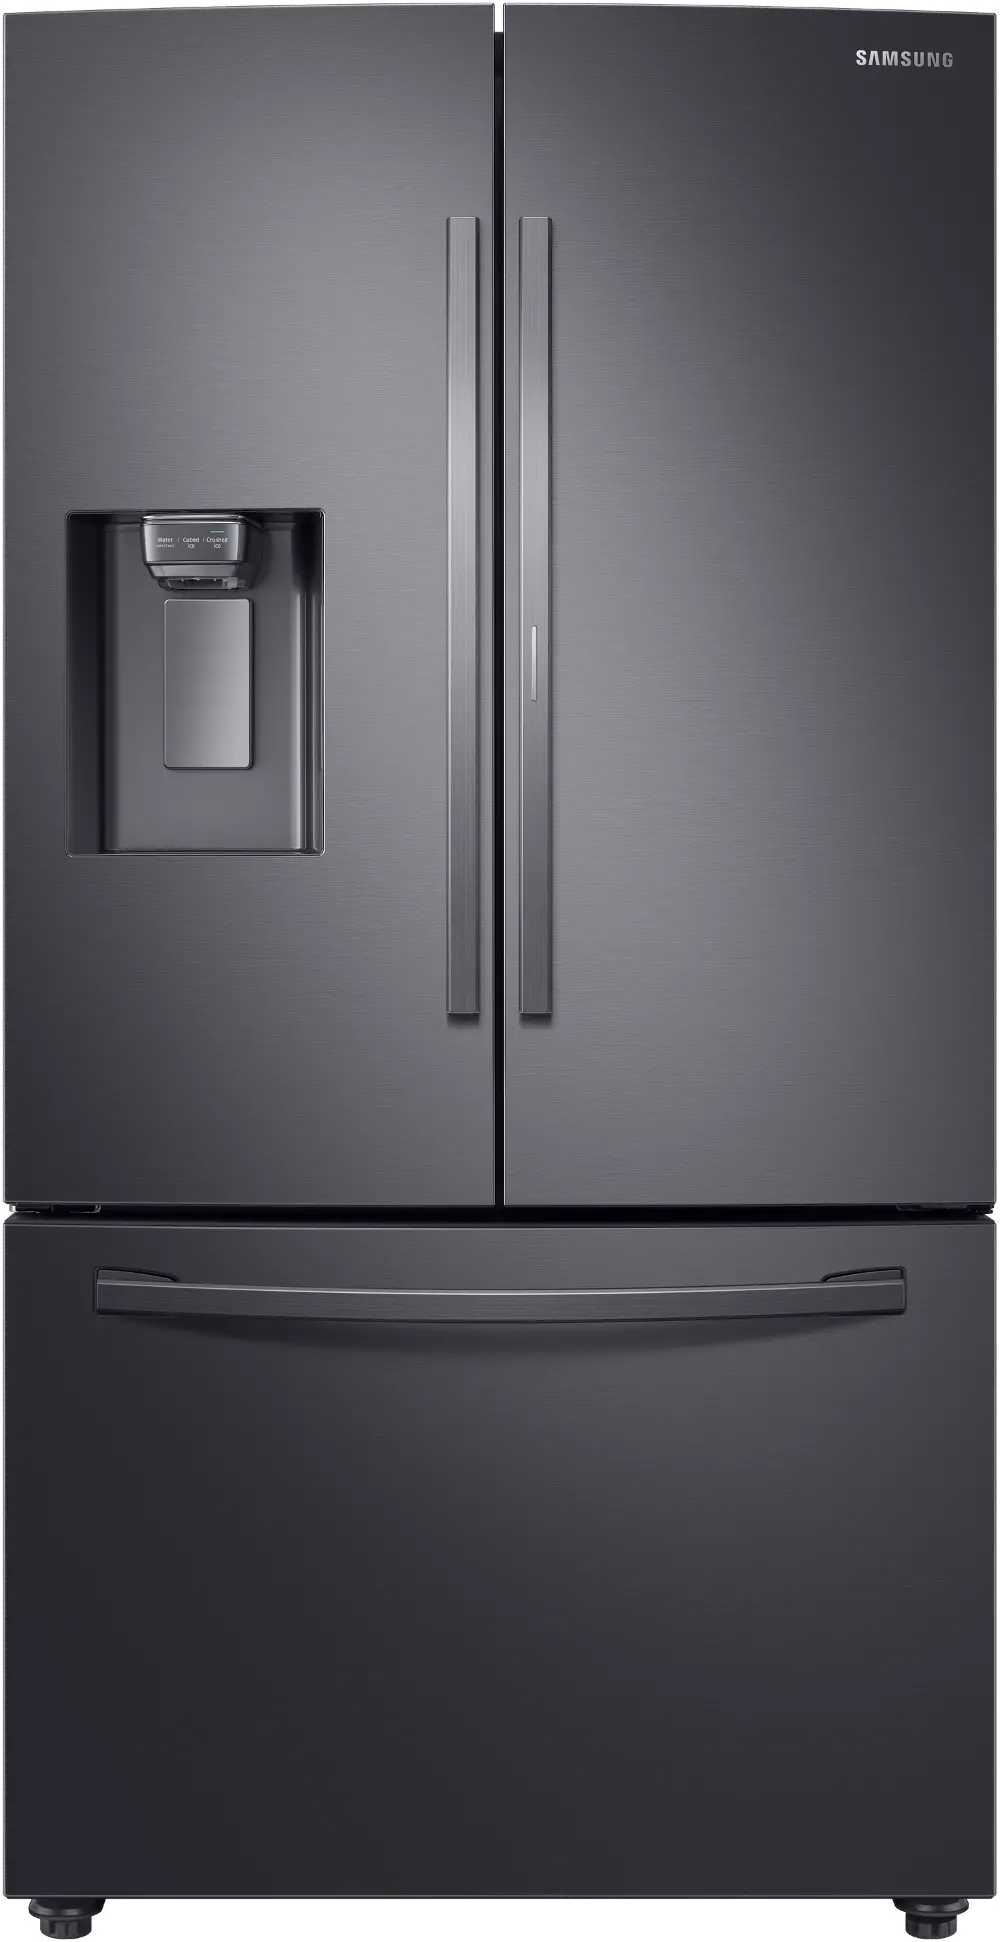 RF28R6301SG Samsung 28 cu ft French Door in Door Smart Refrigerator - Black Stainless Steel-1